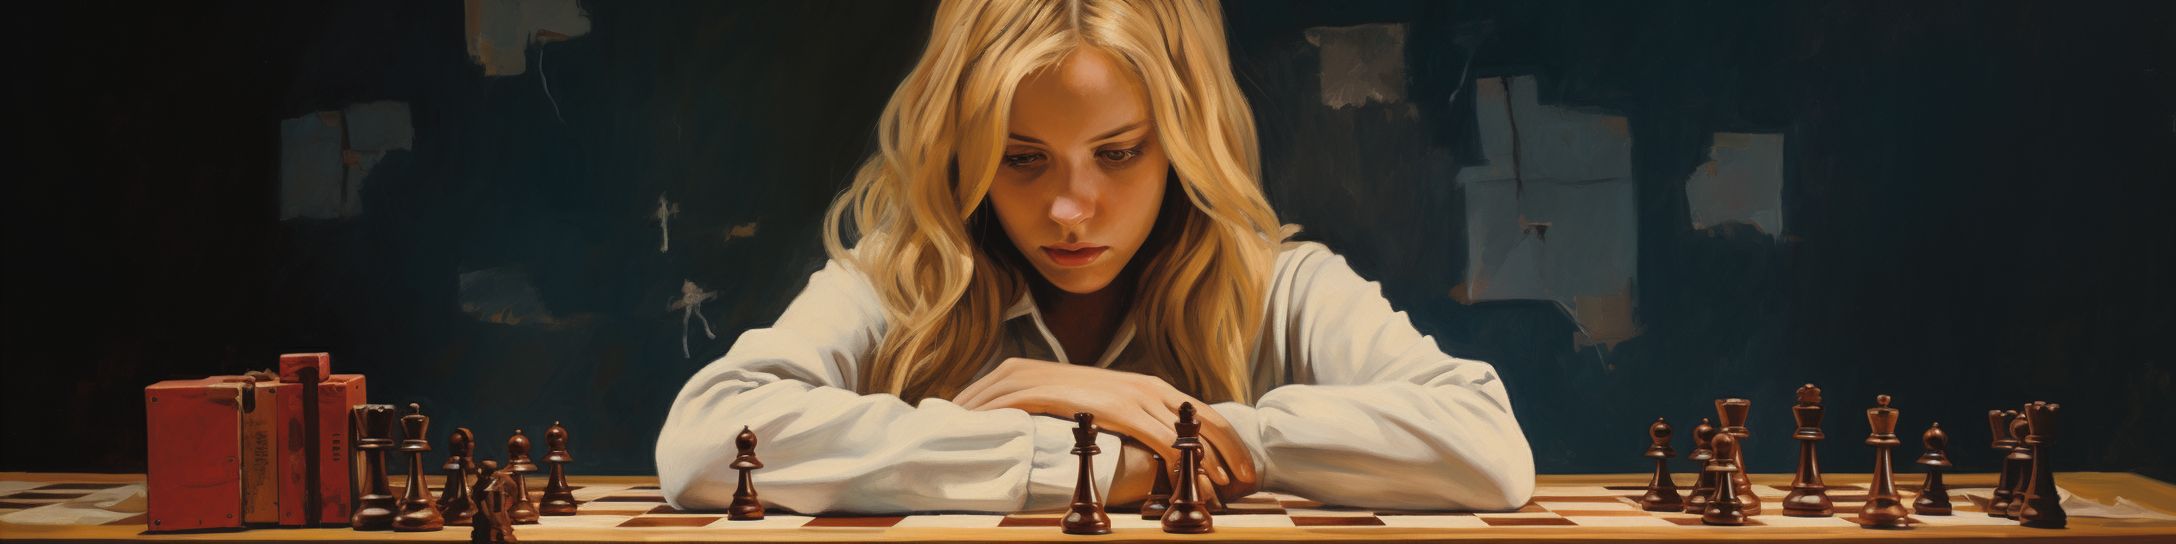 Les débuts dans le monde des échecs de Maia Chiburdanidze